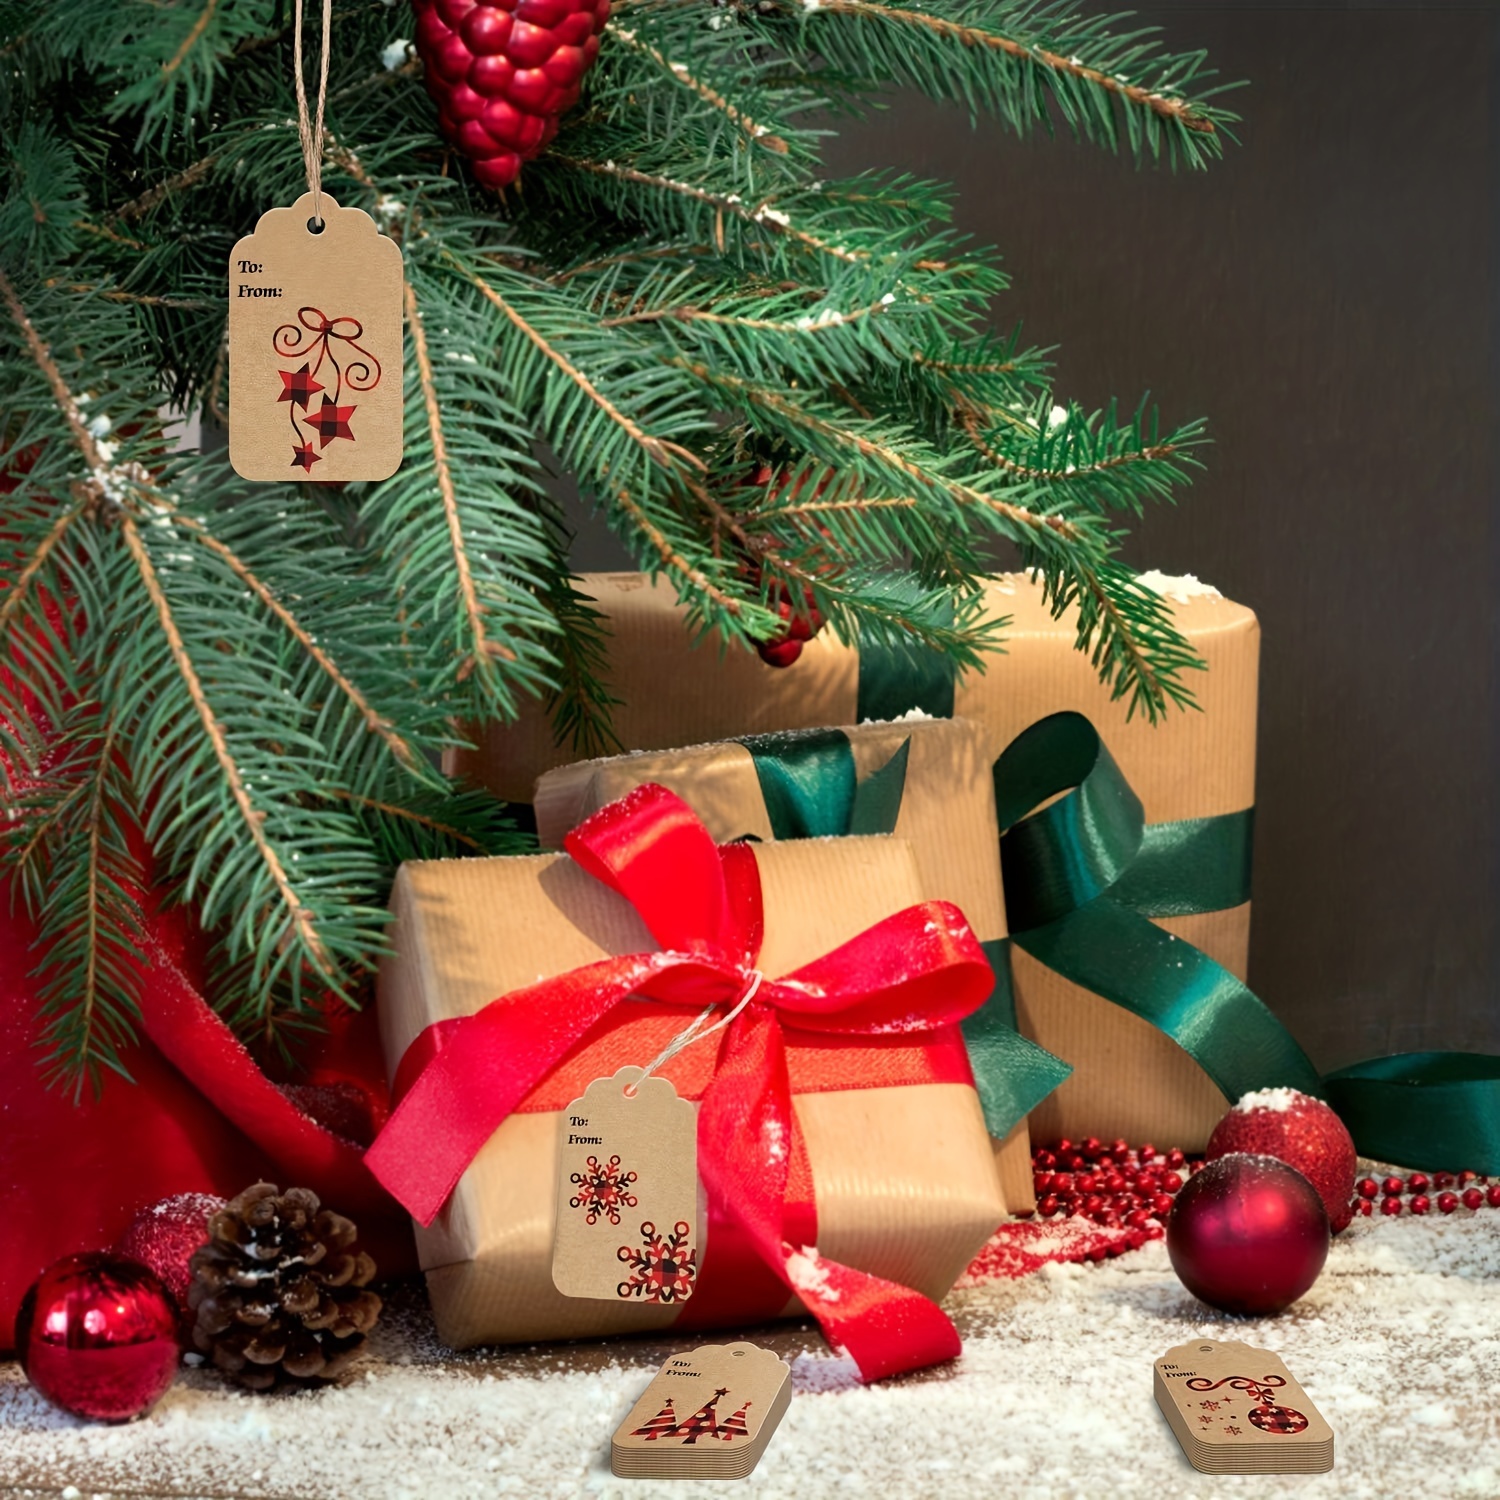 48 Pack Christmas Tags, Christmas Tags for Gifts, Christmas Gift